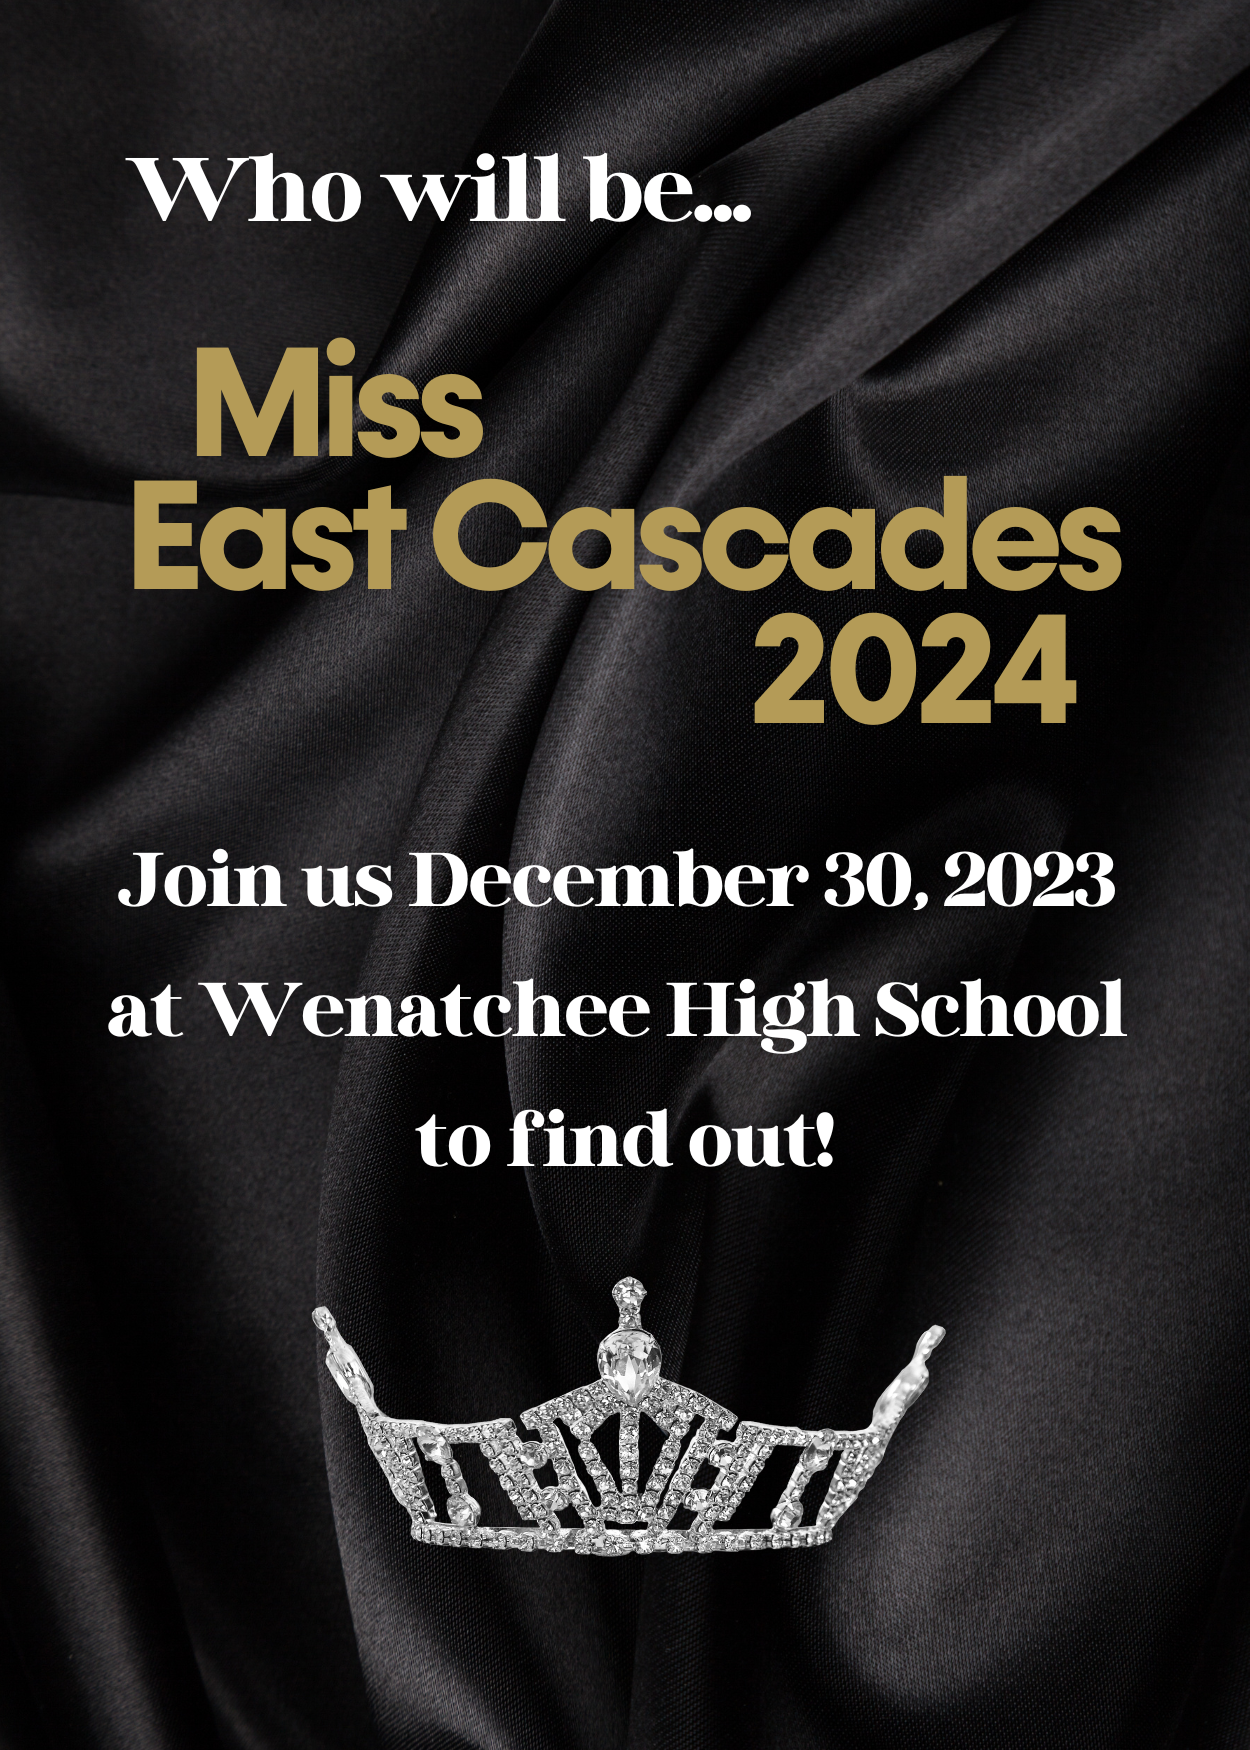 Miss East Cascades 2024